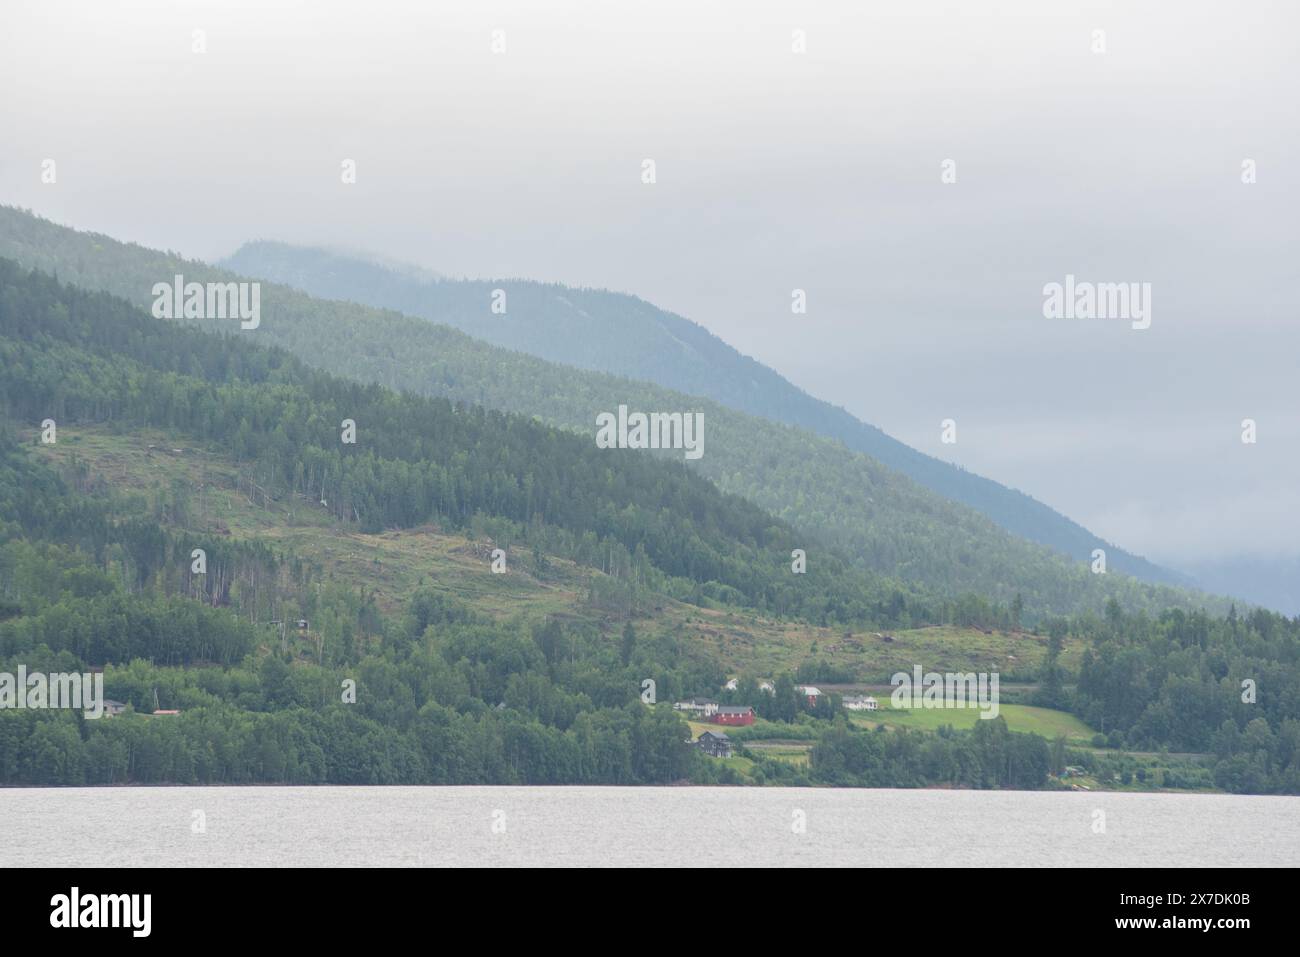 Naturblick auf die norwegischen Berge mit grünen Nadelbäumen, die am Ufer des Sees wachsen. Stockfoto